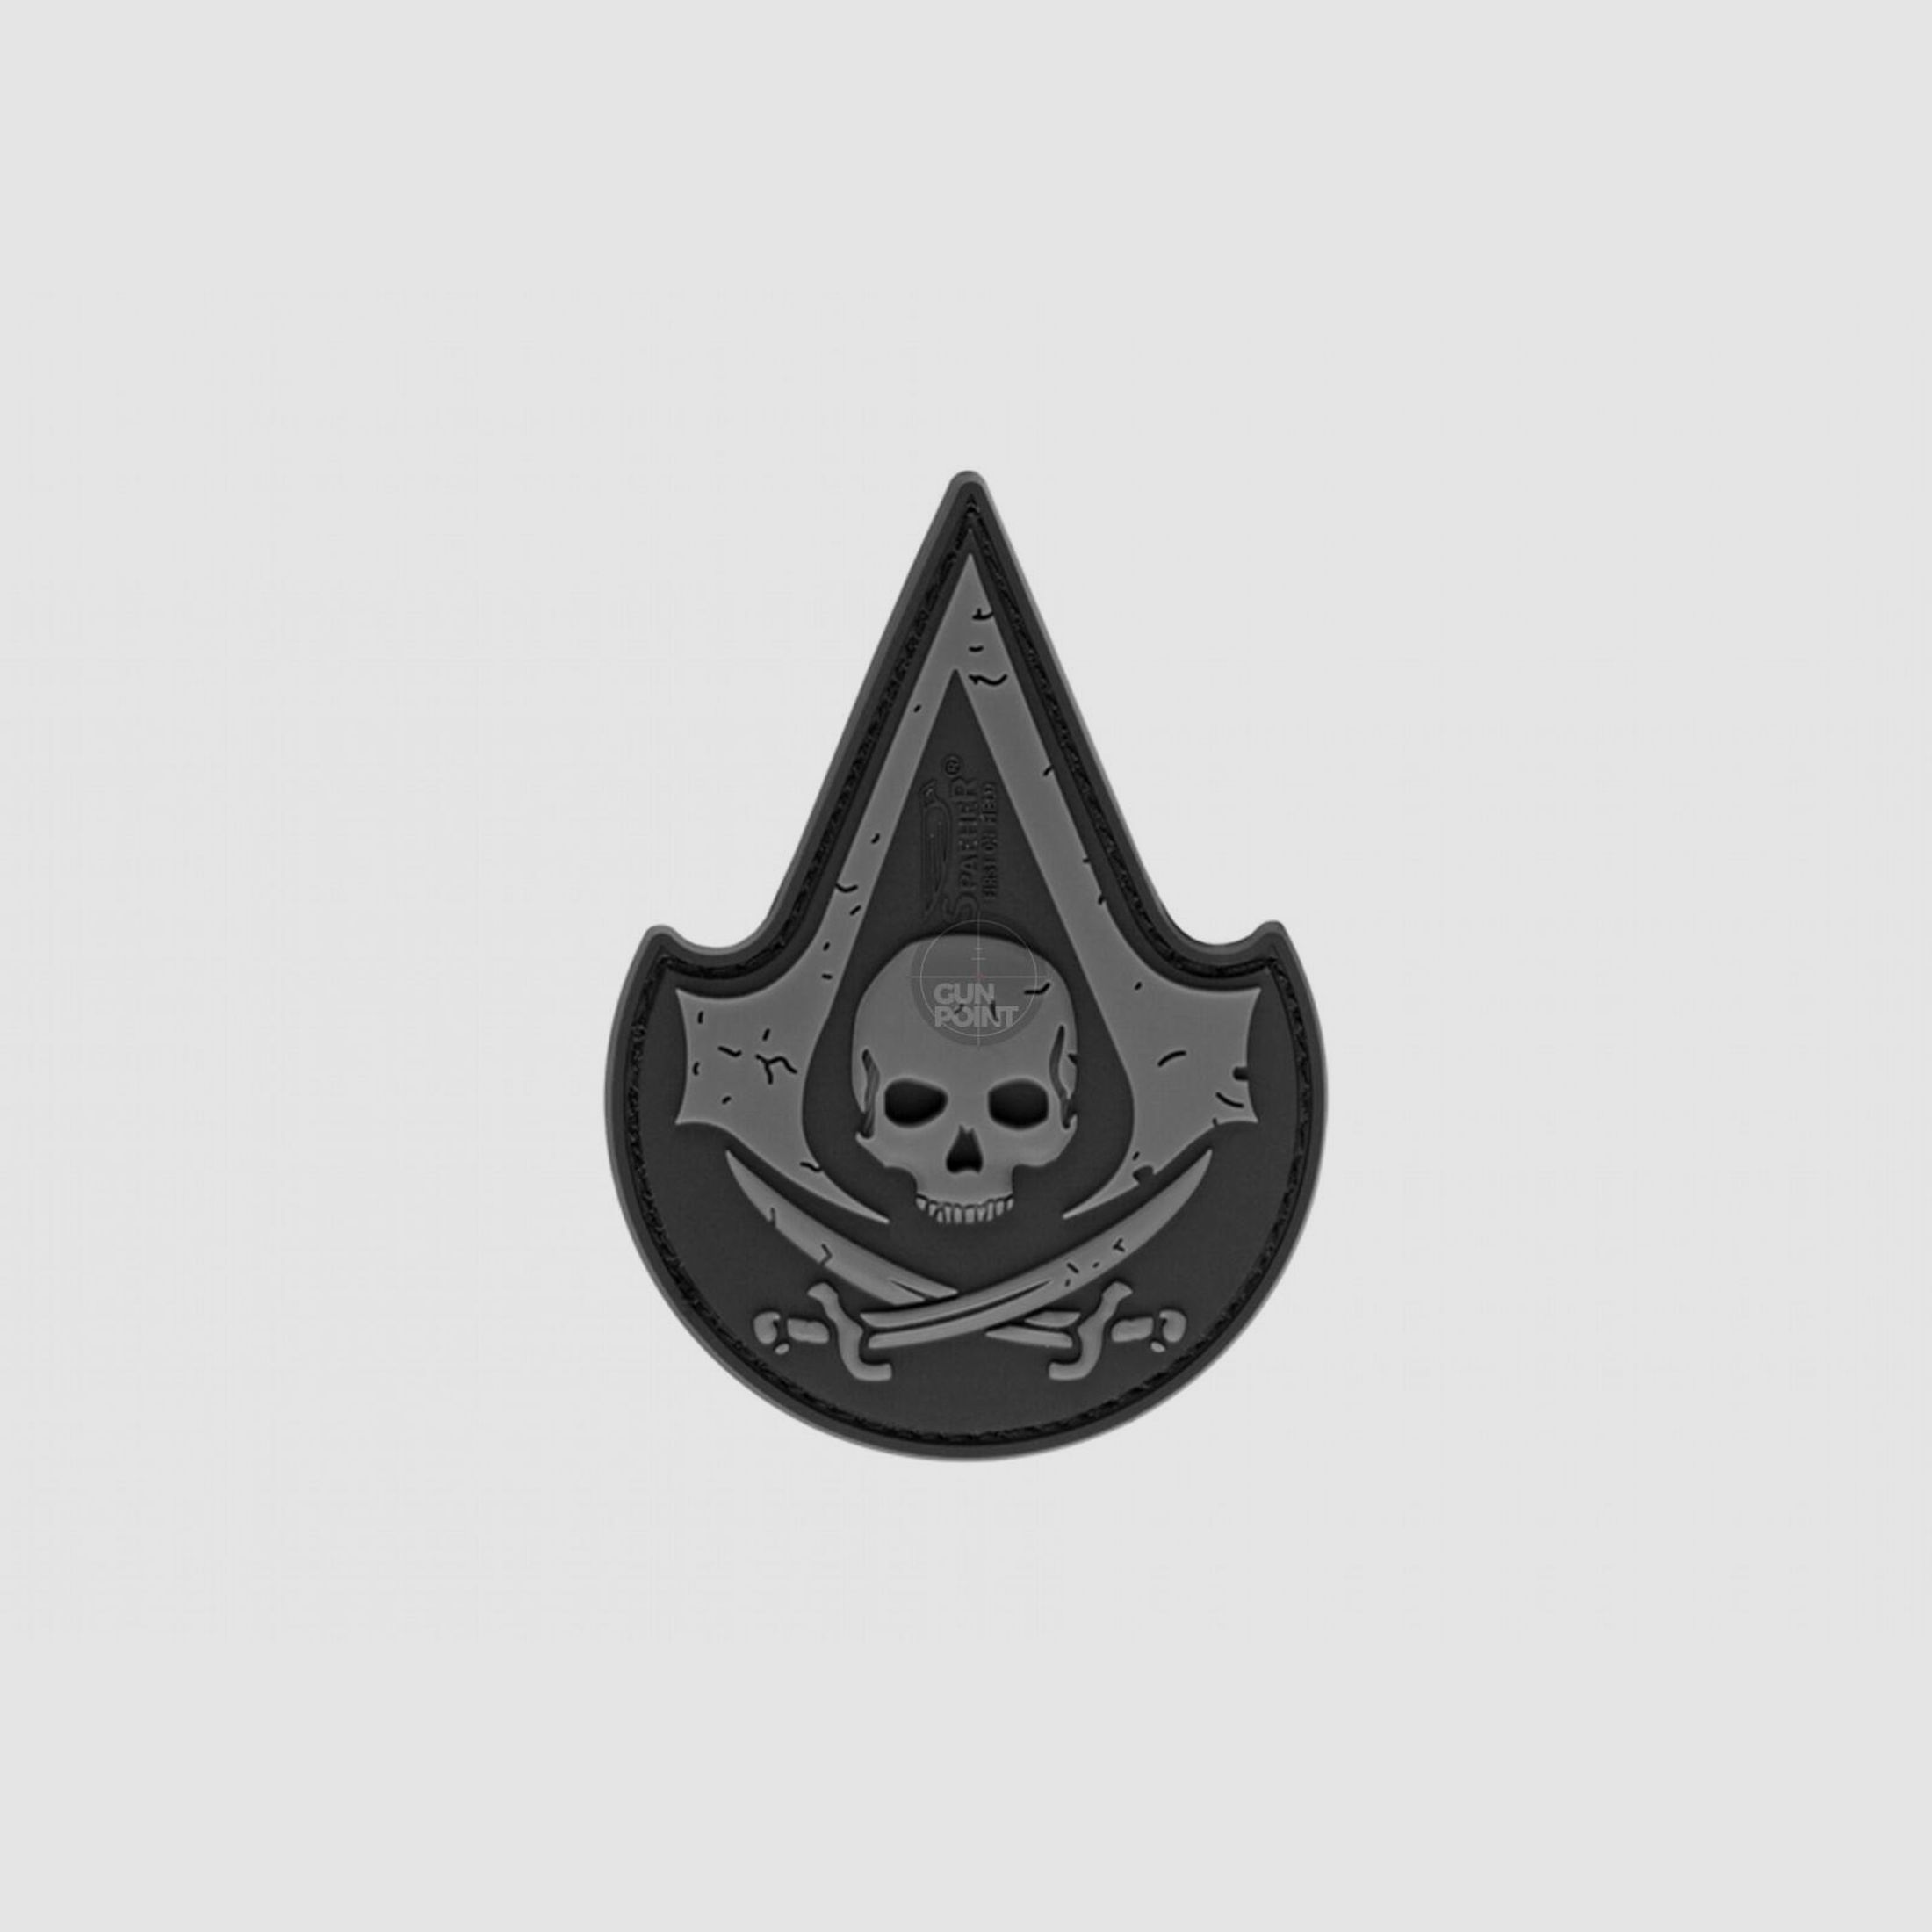 JTG Assassin Skull Rubber Patch-SWAT